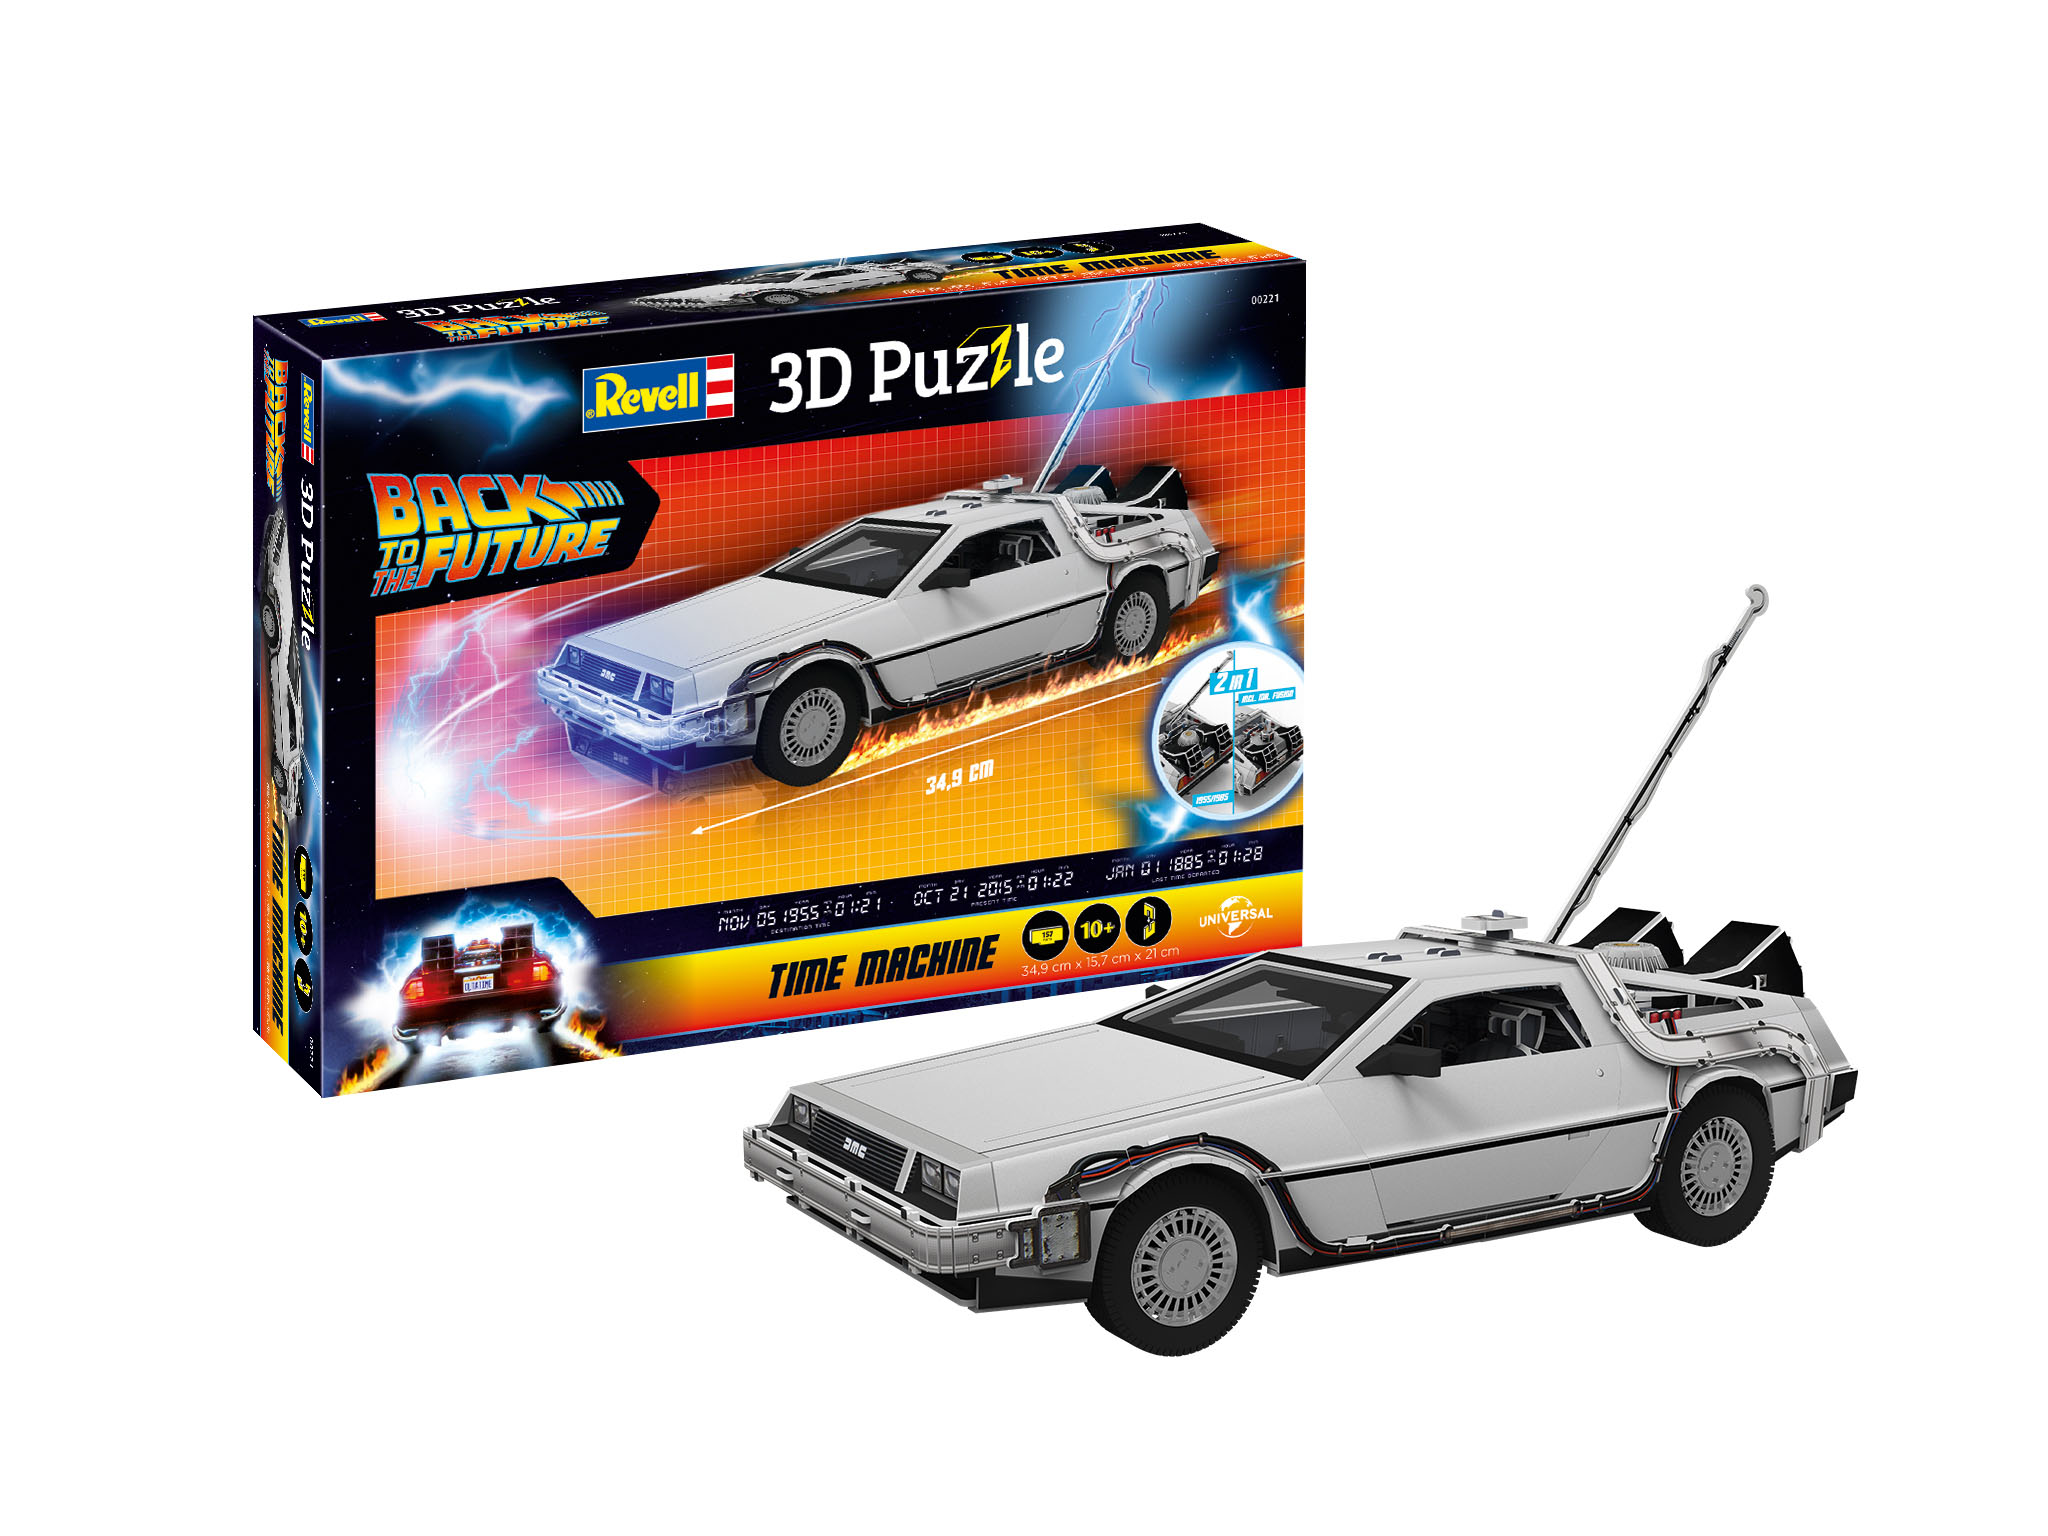 3D Puzzle DeLorean Back to the future